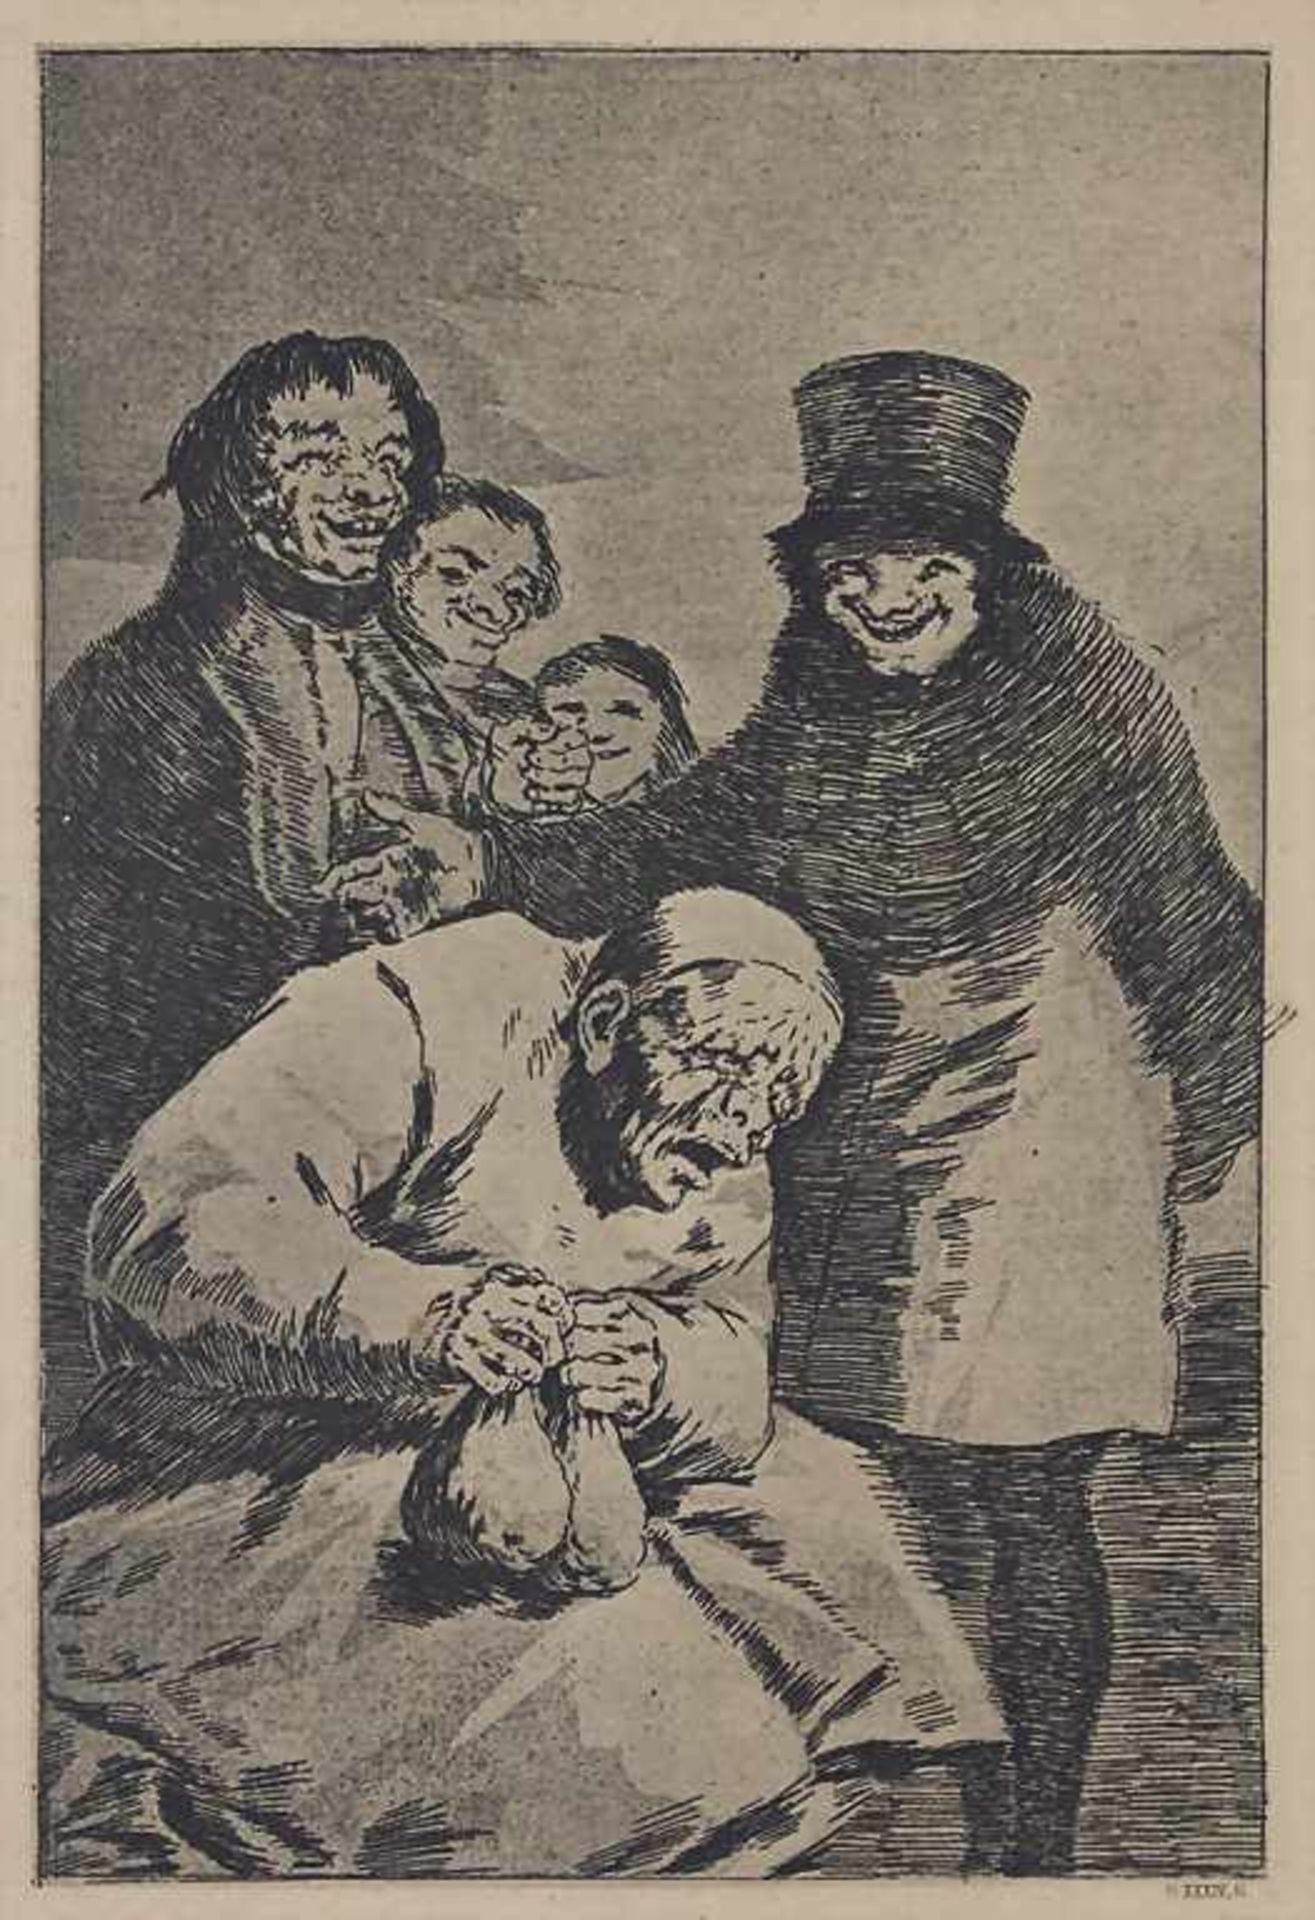 Francisco de Goya (1746-1828), 'Los Capricho: Esconderlos à Por que?'Titel: Warum ihn